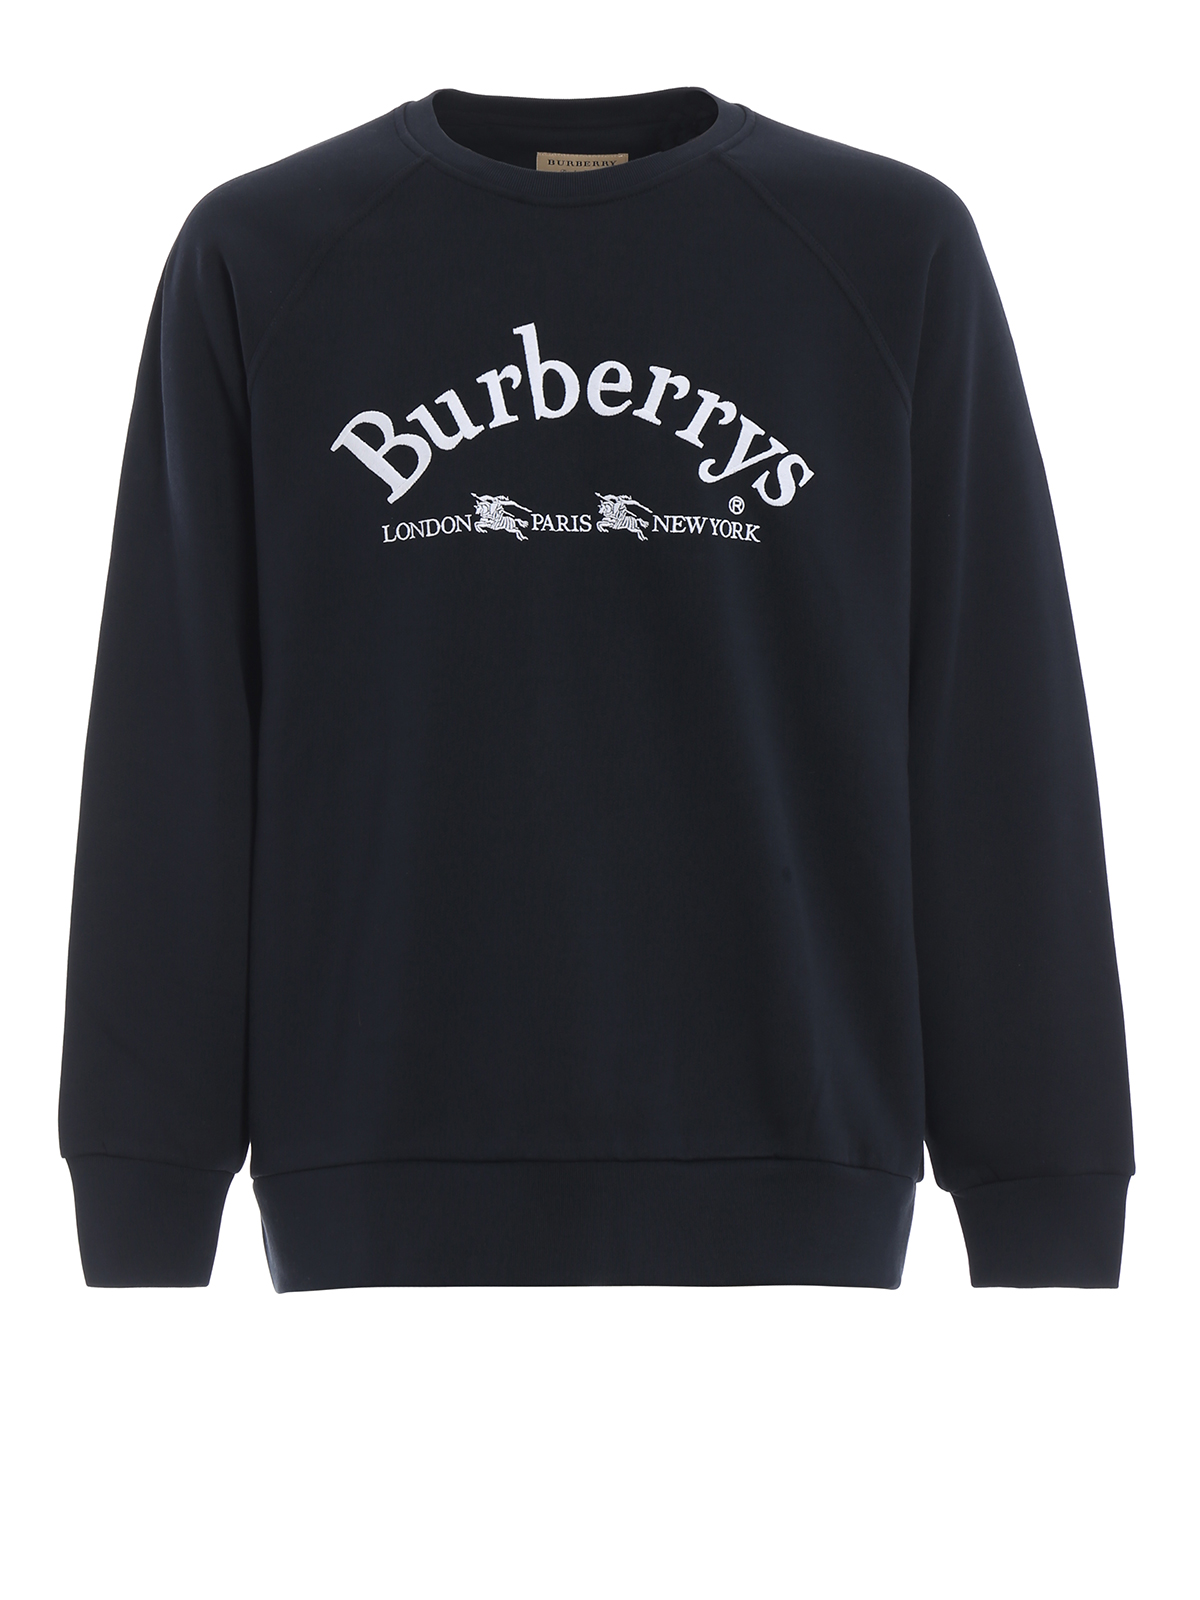 Toneelschrijver Overeenkomstig met Iedereen Sweatshirts & Sweaters Burberry - Battarni Burberrys embroidery navy  sweatshirt - 8003016